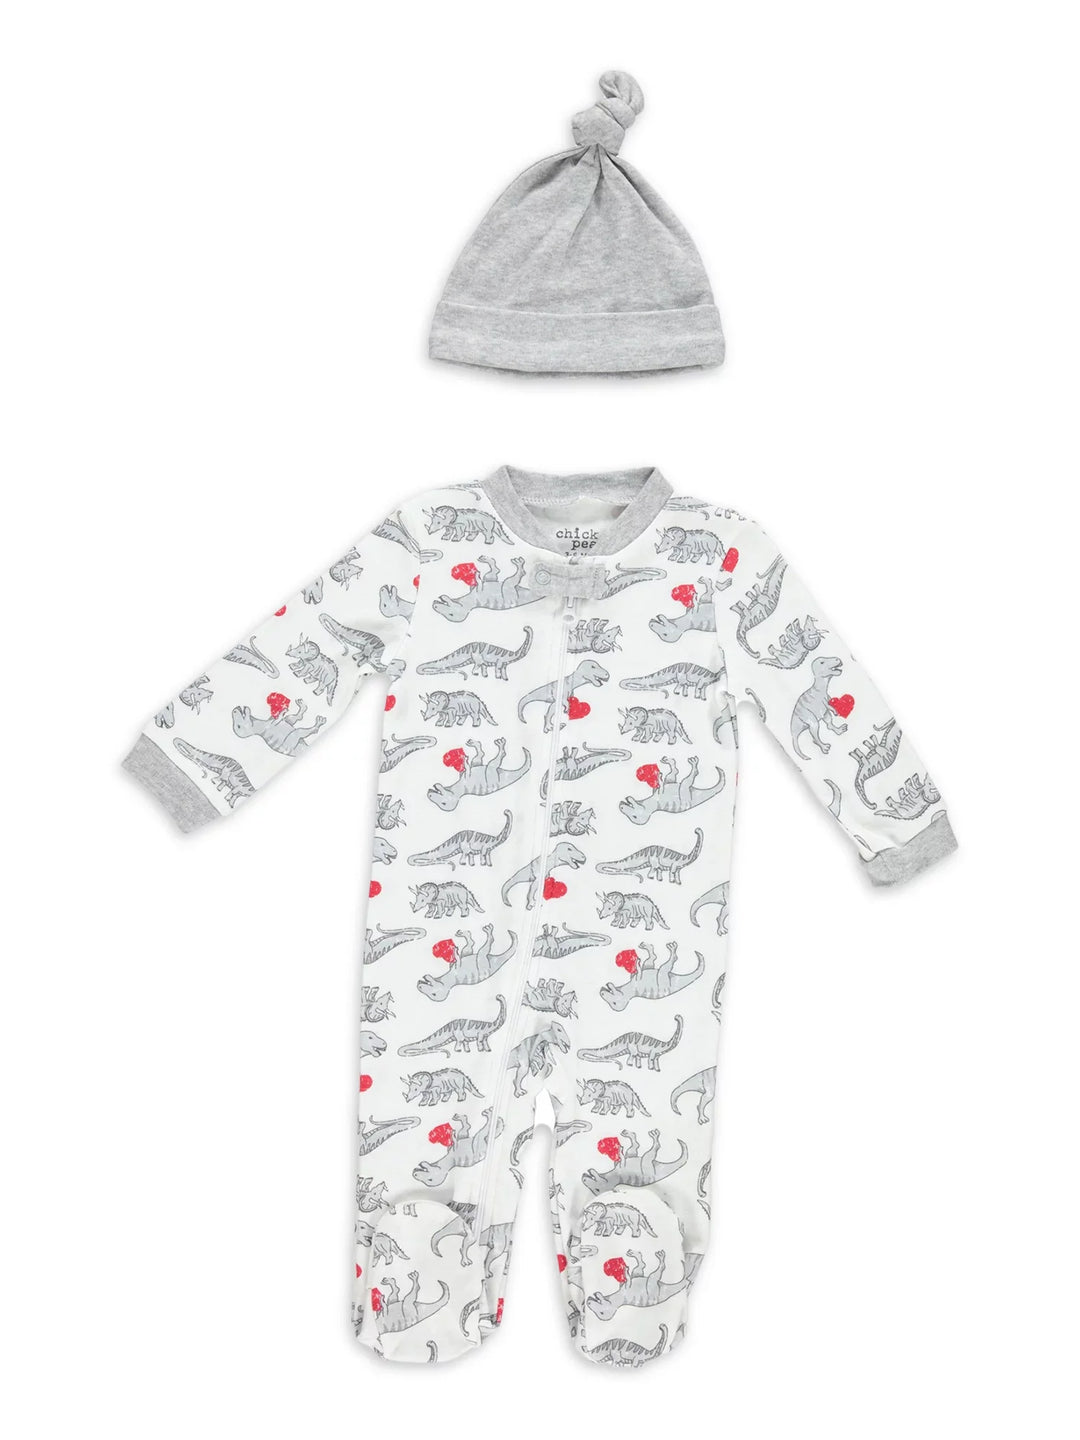 Newborn-Essentials-Pajama-Set-Unisex-Baby-Girl-Boy-Sleeper-Footie-Registry-Shower-Gift-Image1